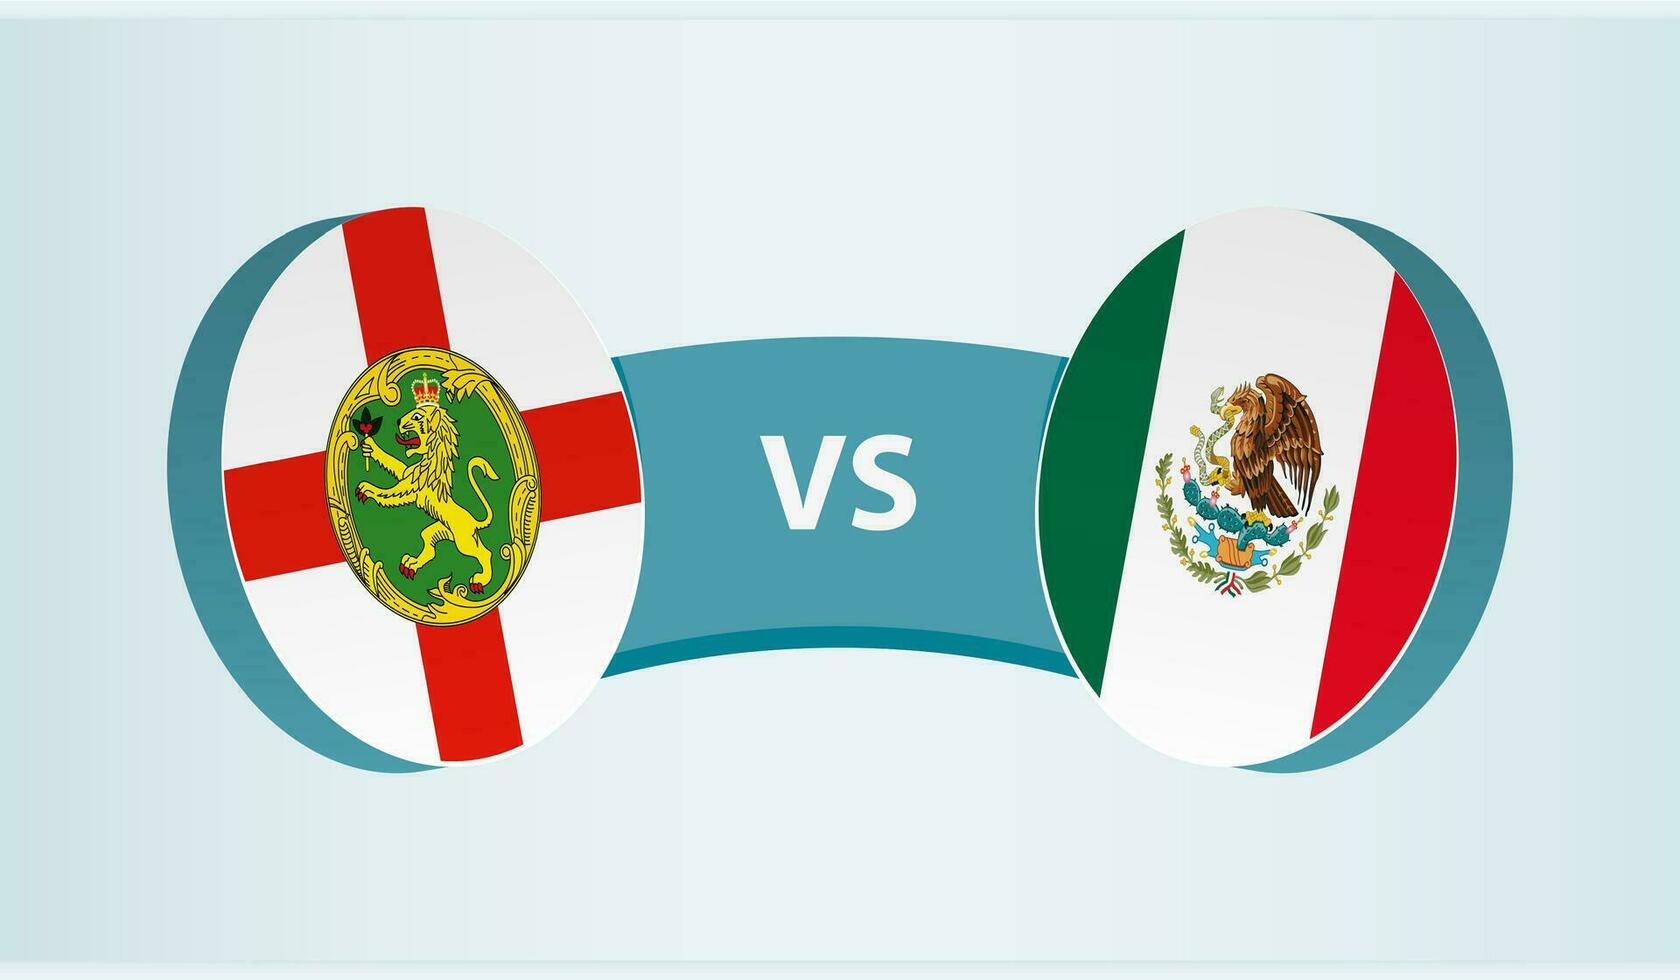 alderney mot Mexiko, team sporter konkurrens begrepp. vektor